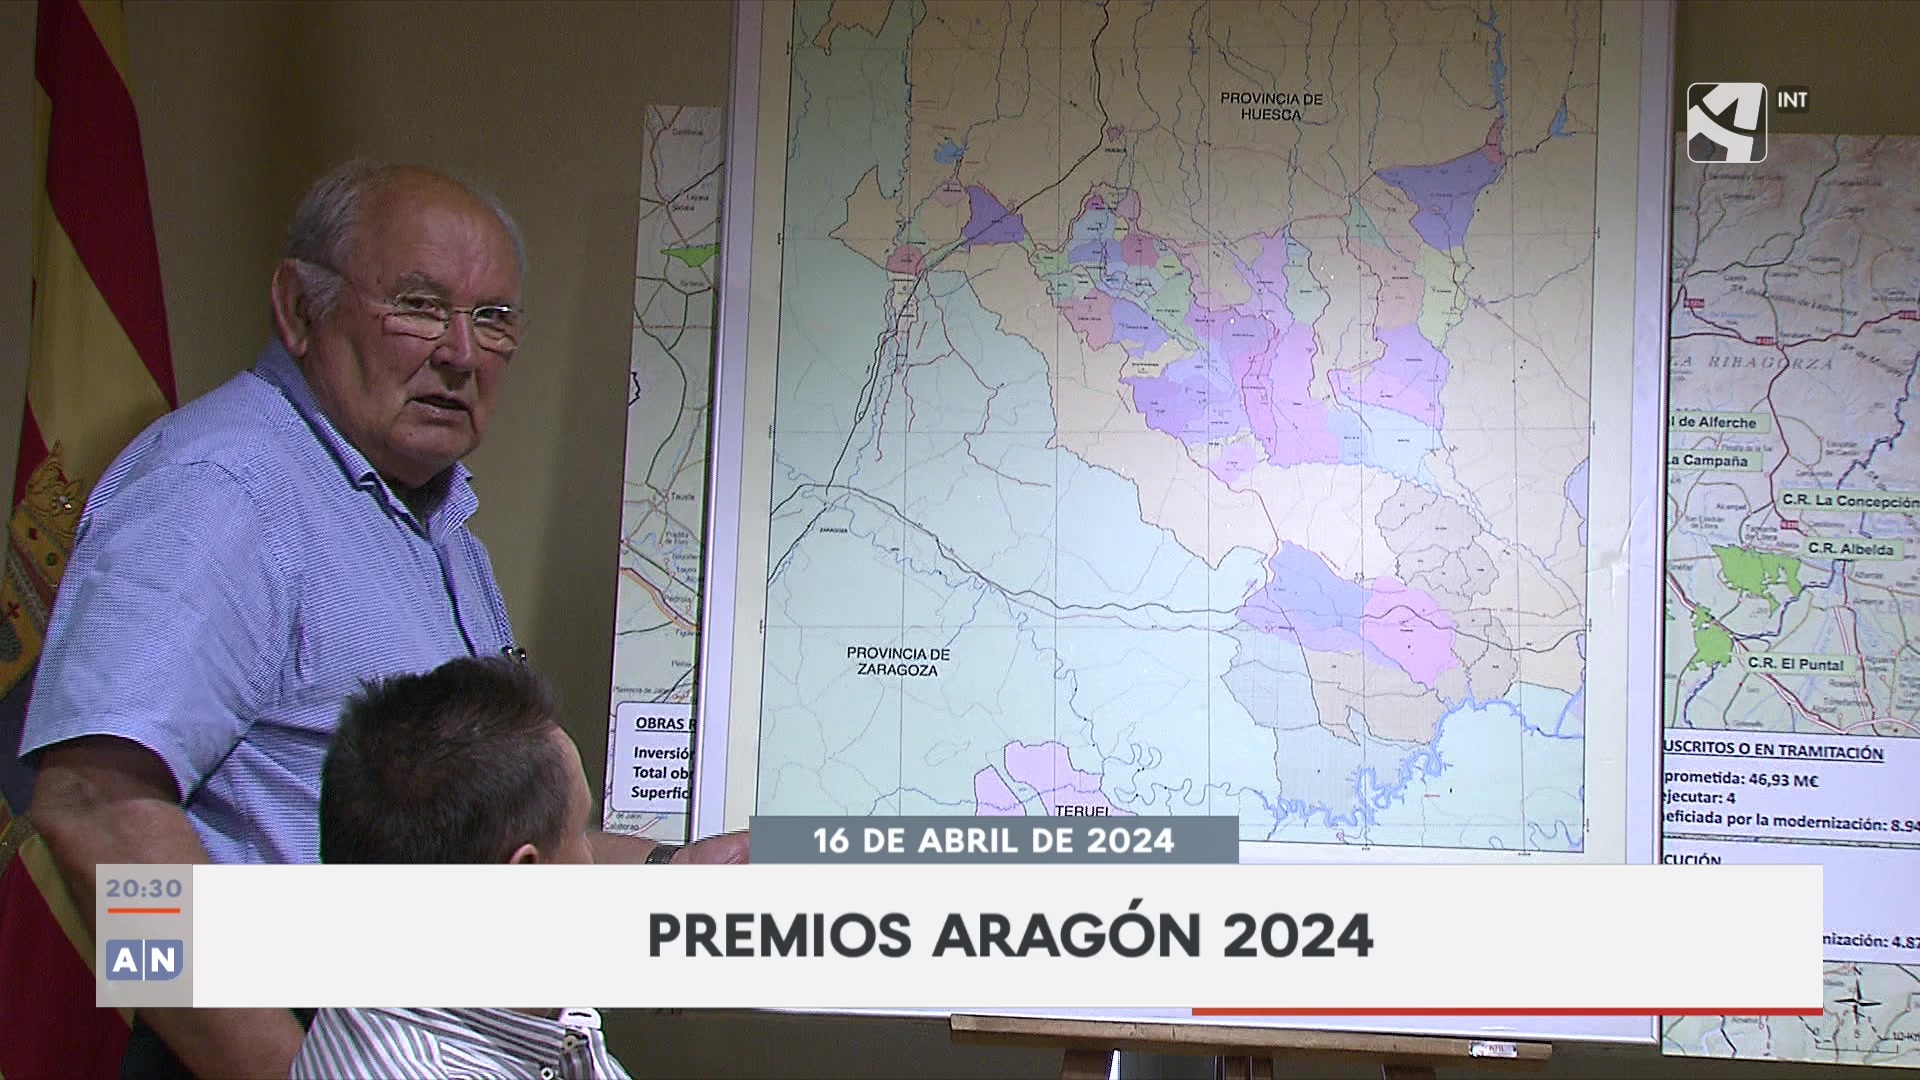 Aragón Noticias 2 - 16/04/2024 20:30